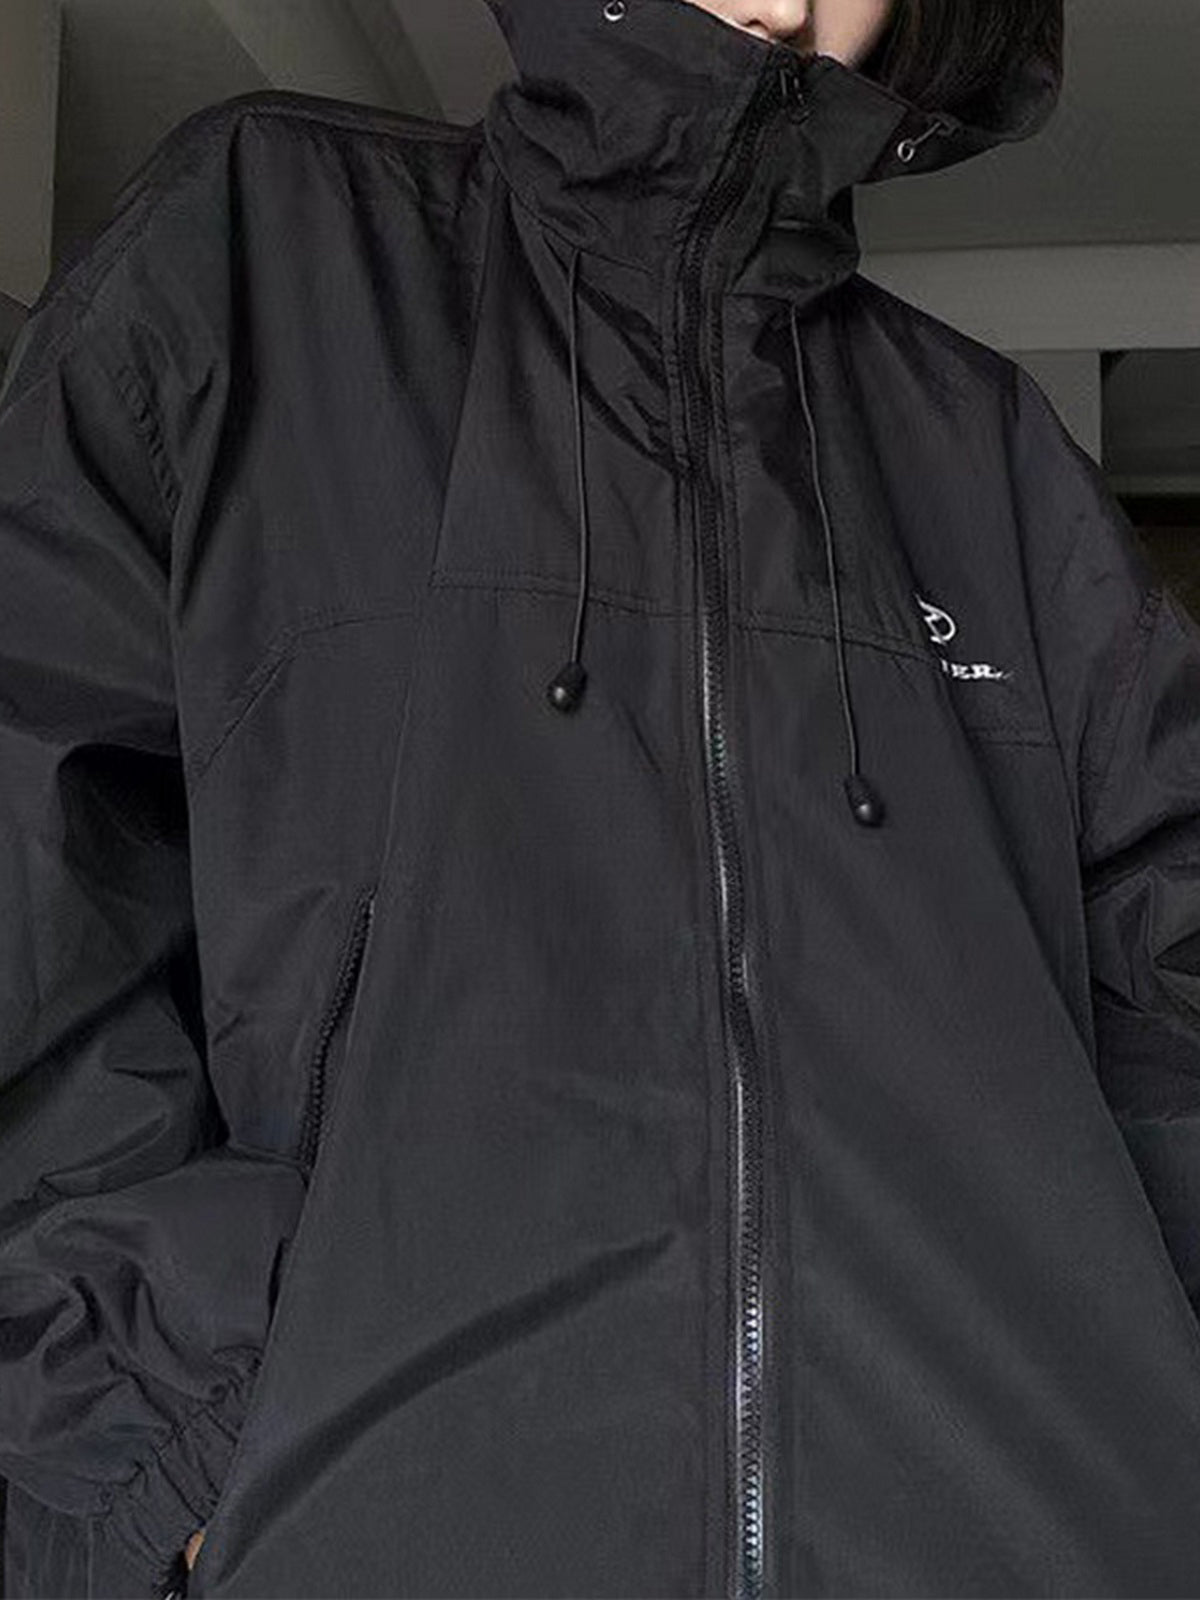 Veste d'extérieur imperméable surdimensionnée noire rétro avec capuche